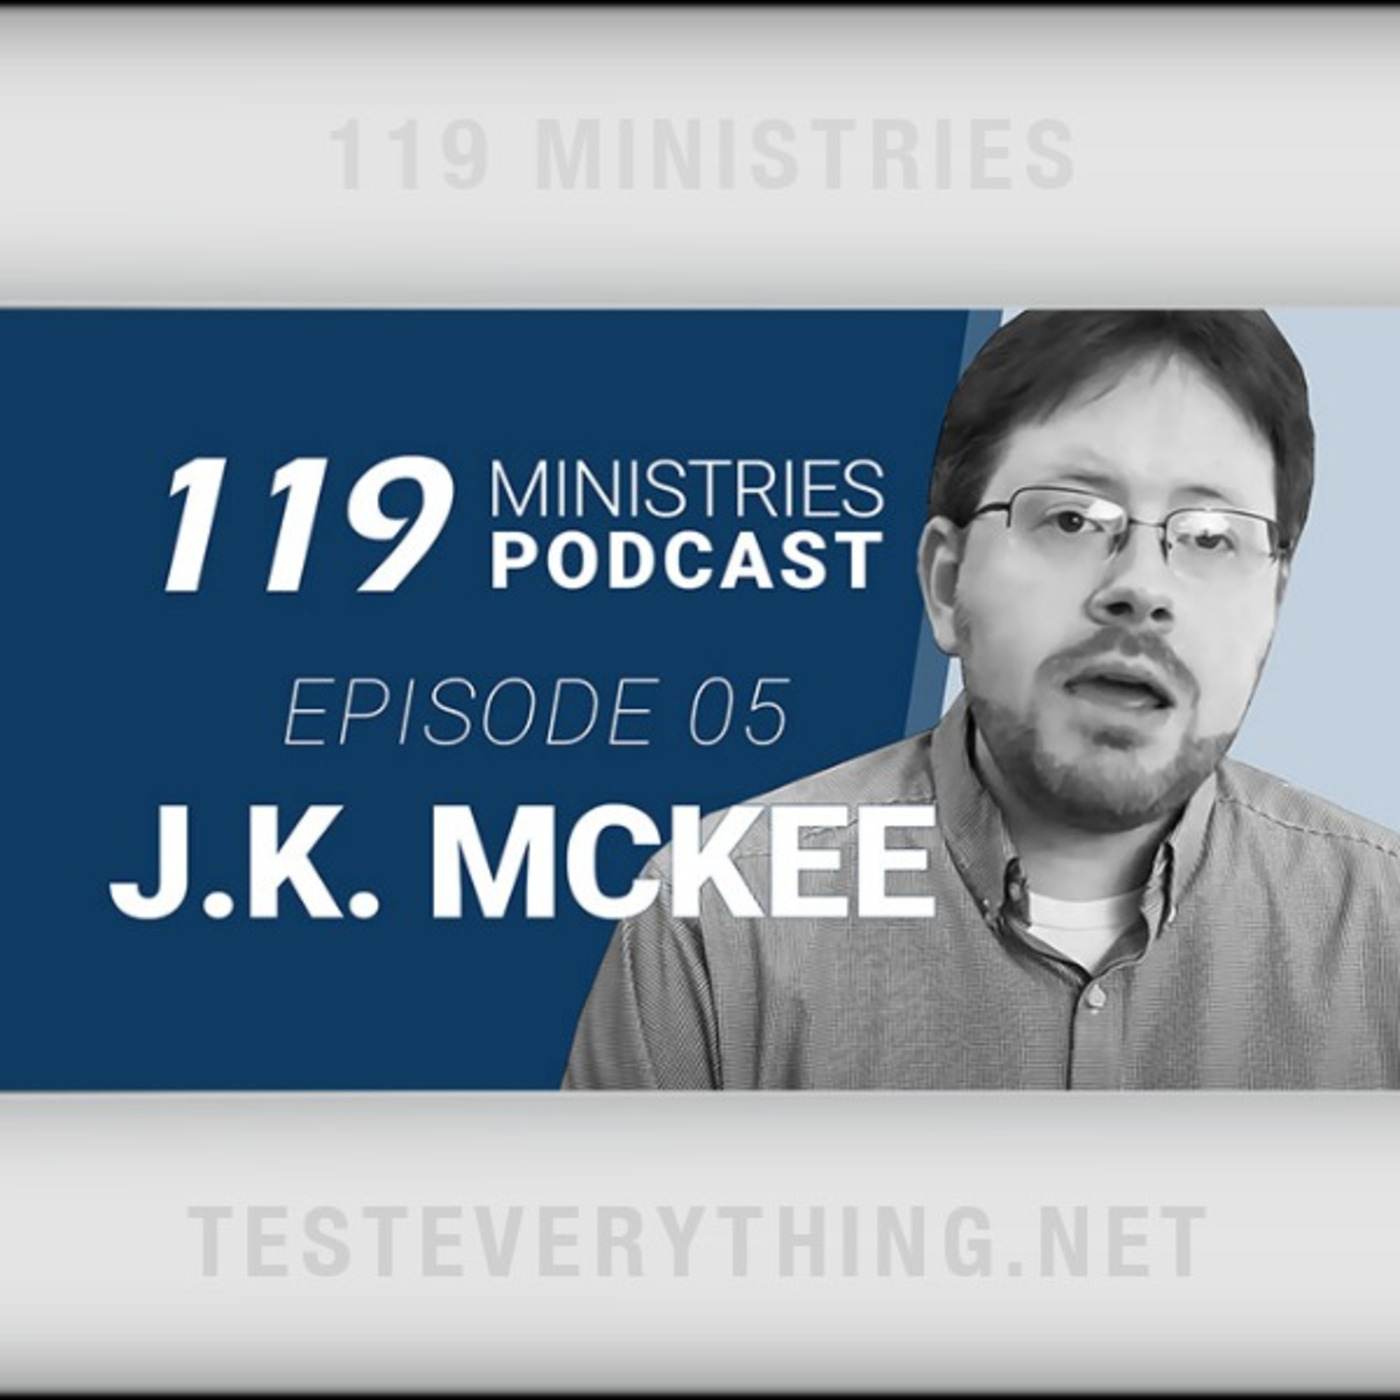 Episode 498: 119 Podcast: Episode 5 - J.K. McKee